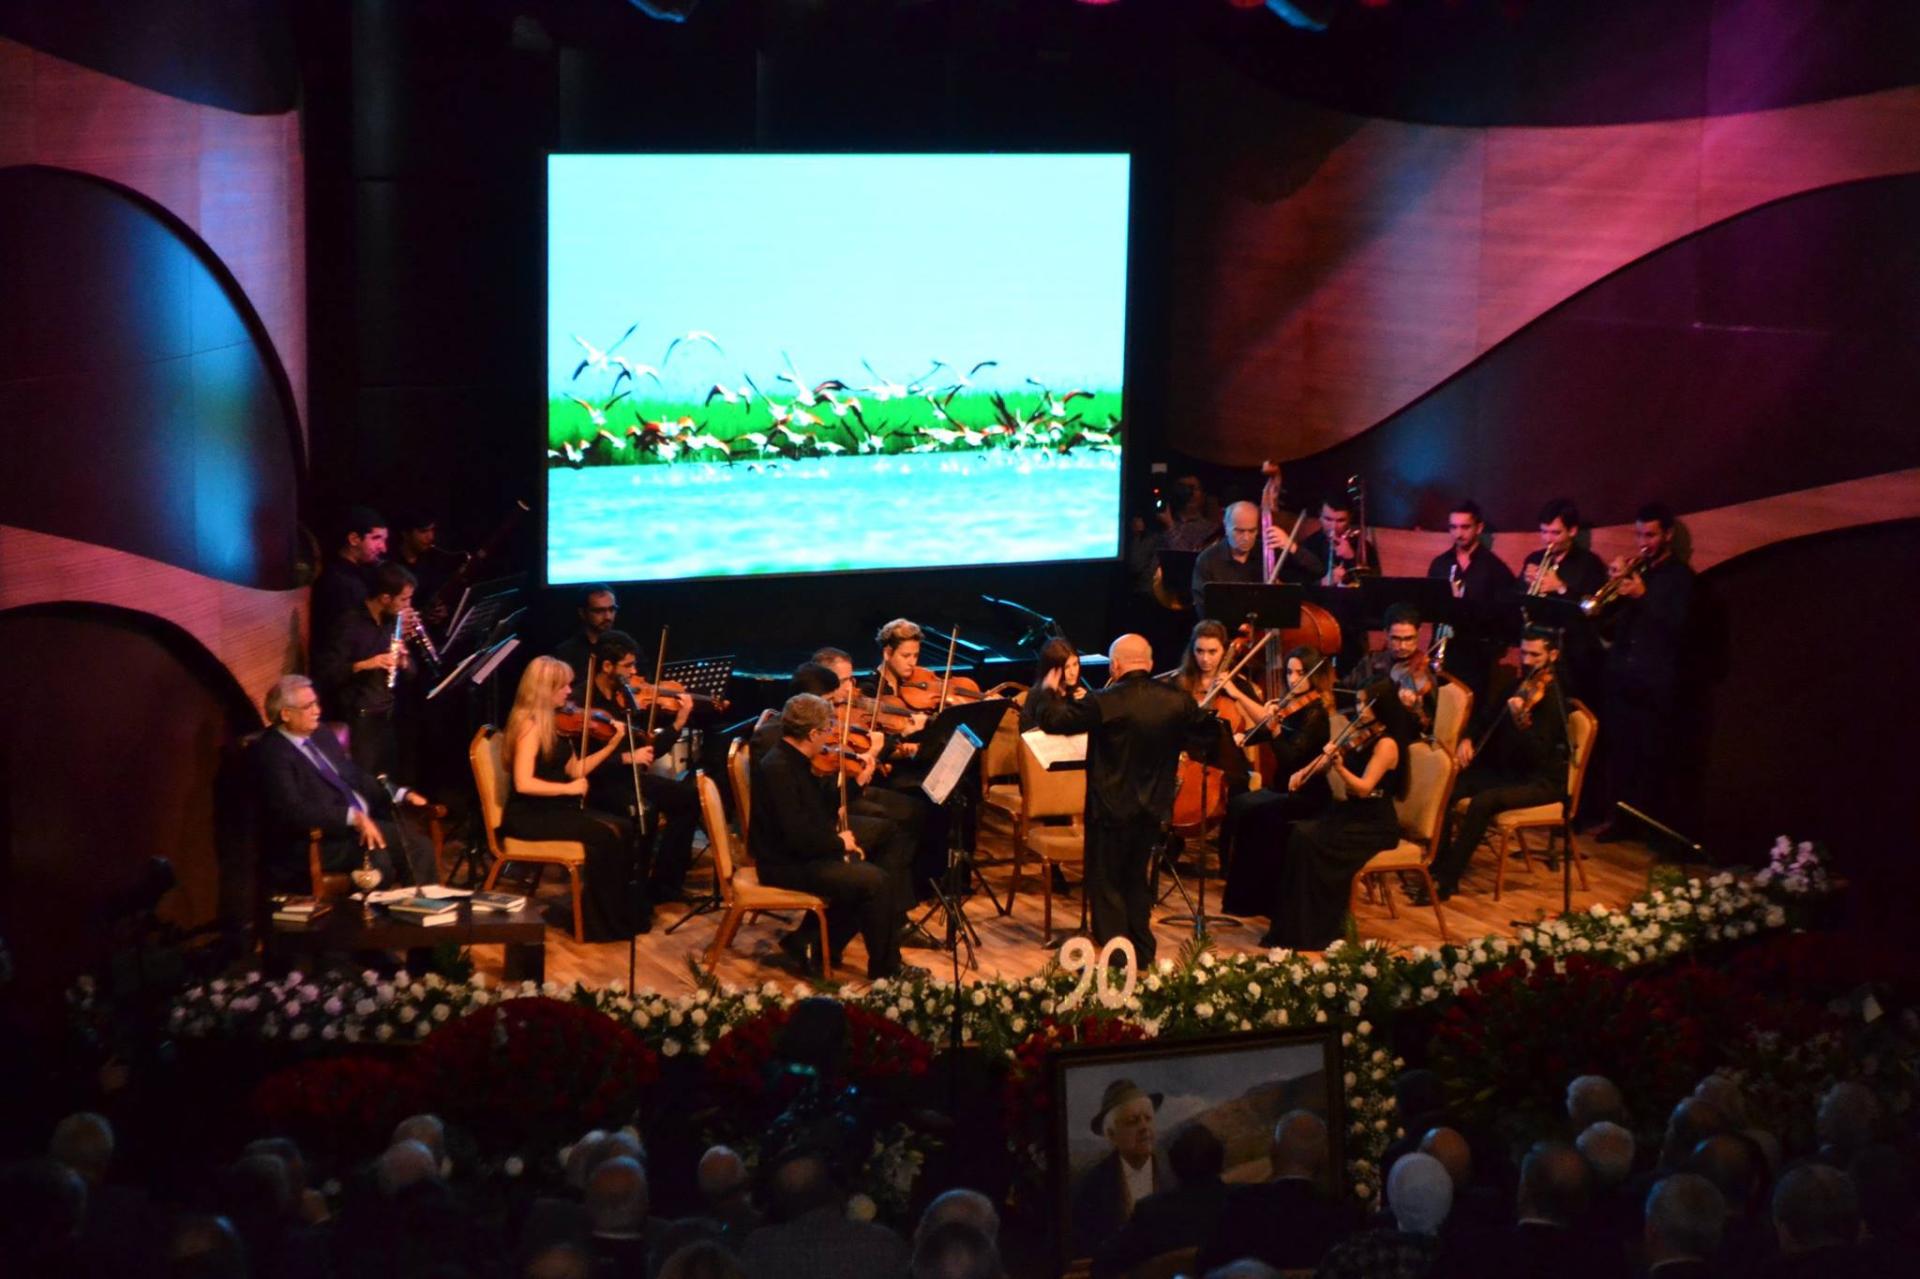 В Баку прошел торжественный вечер  в честь 90-летия Али Ильдырымоглу (ФОТО)